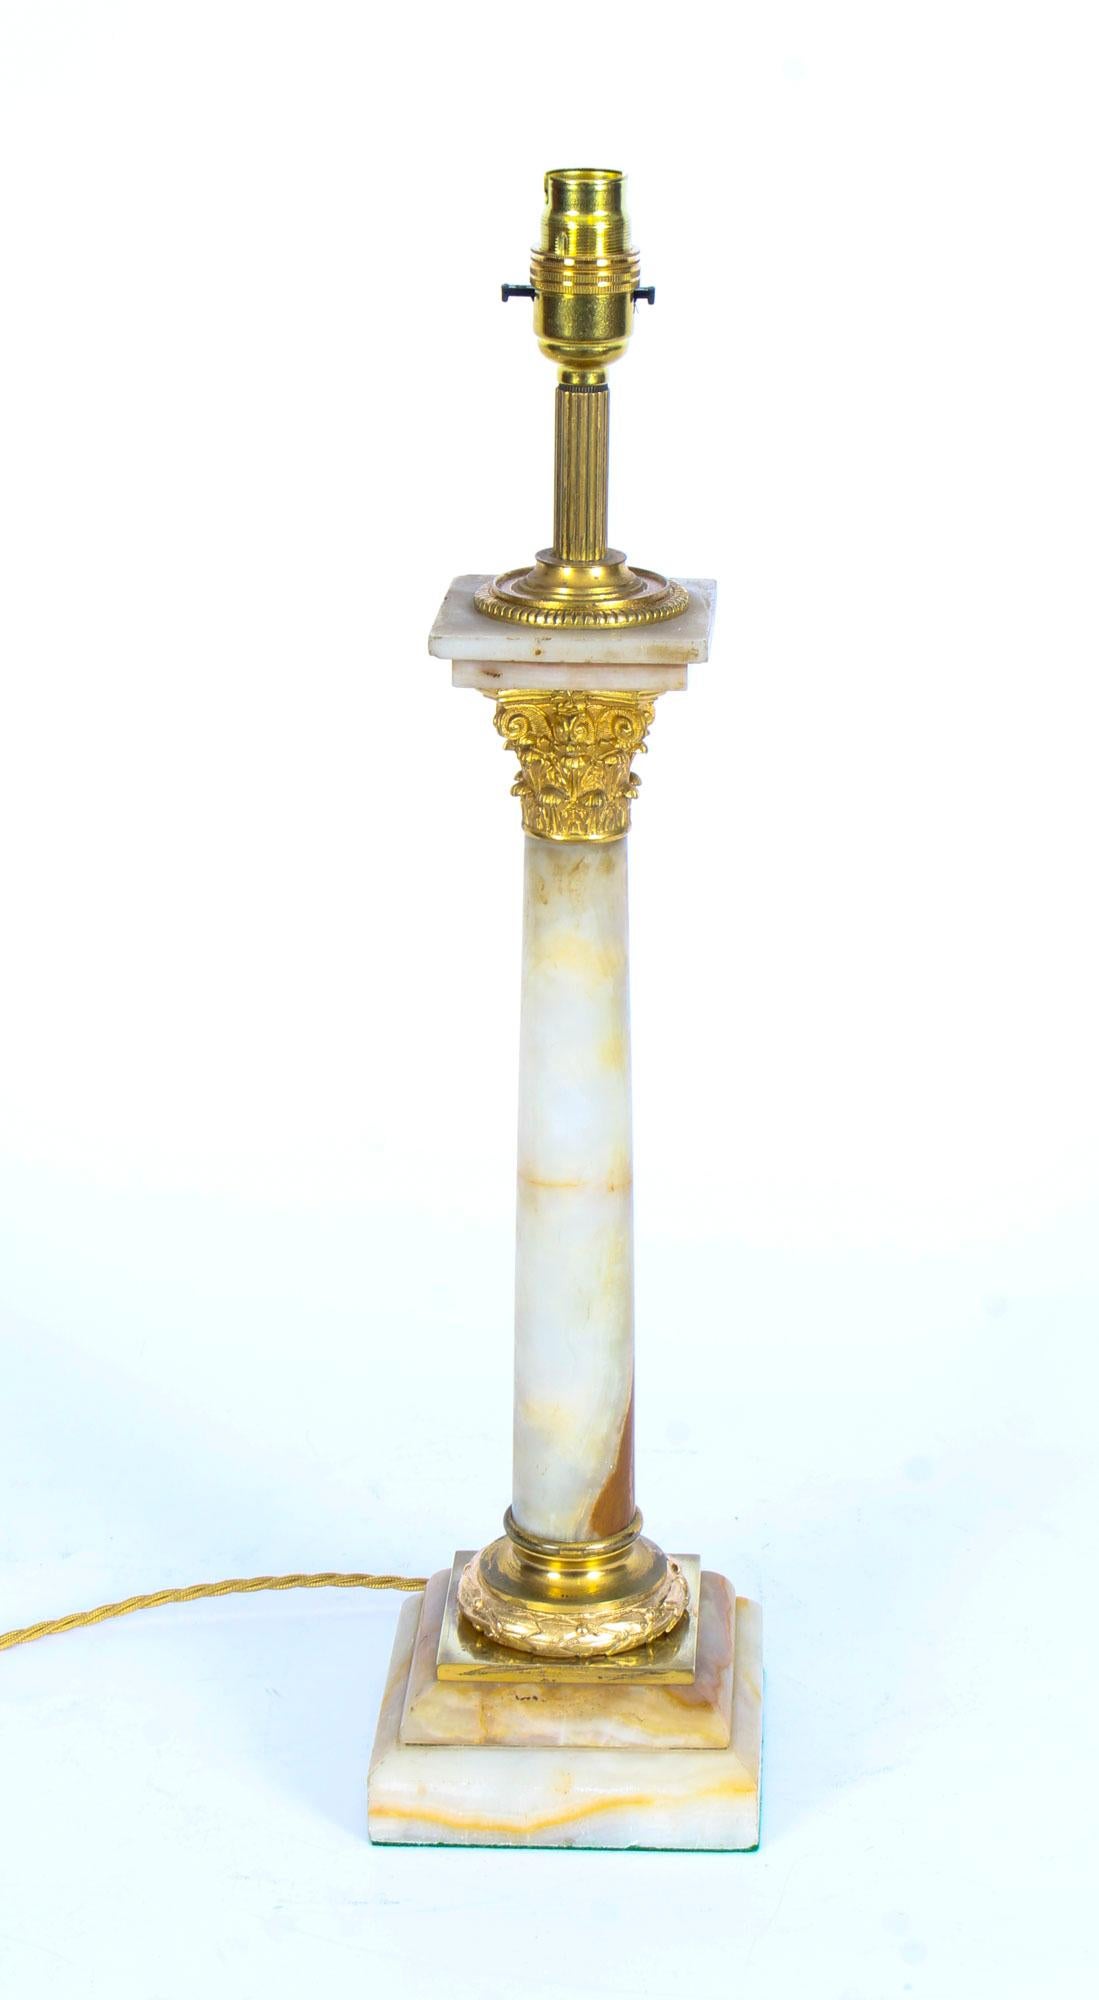 Il s'agit d'une splendide lampe de table à colonne corinthienne en onyx monté en bronze doré de la fin de l'époque victorienne, maintenant convertie à l'électricité, datant d'environ 1880.

Cette opulente lampe de table ancienne présente un